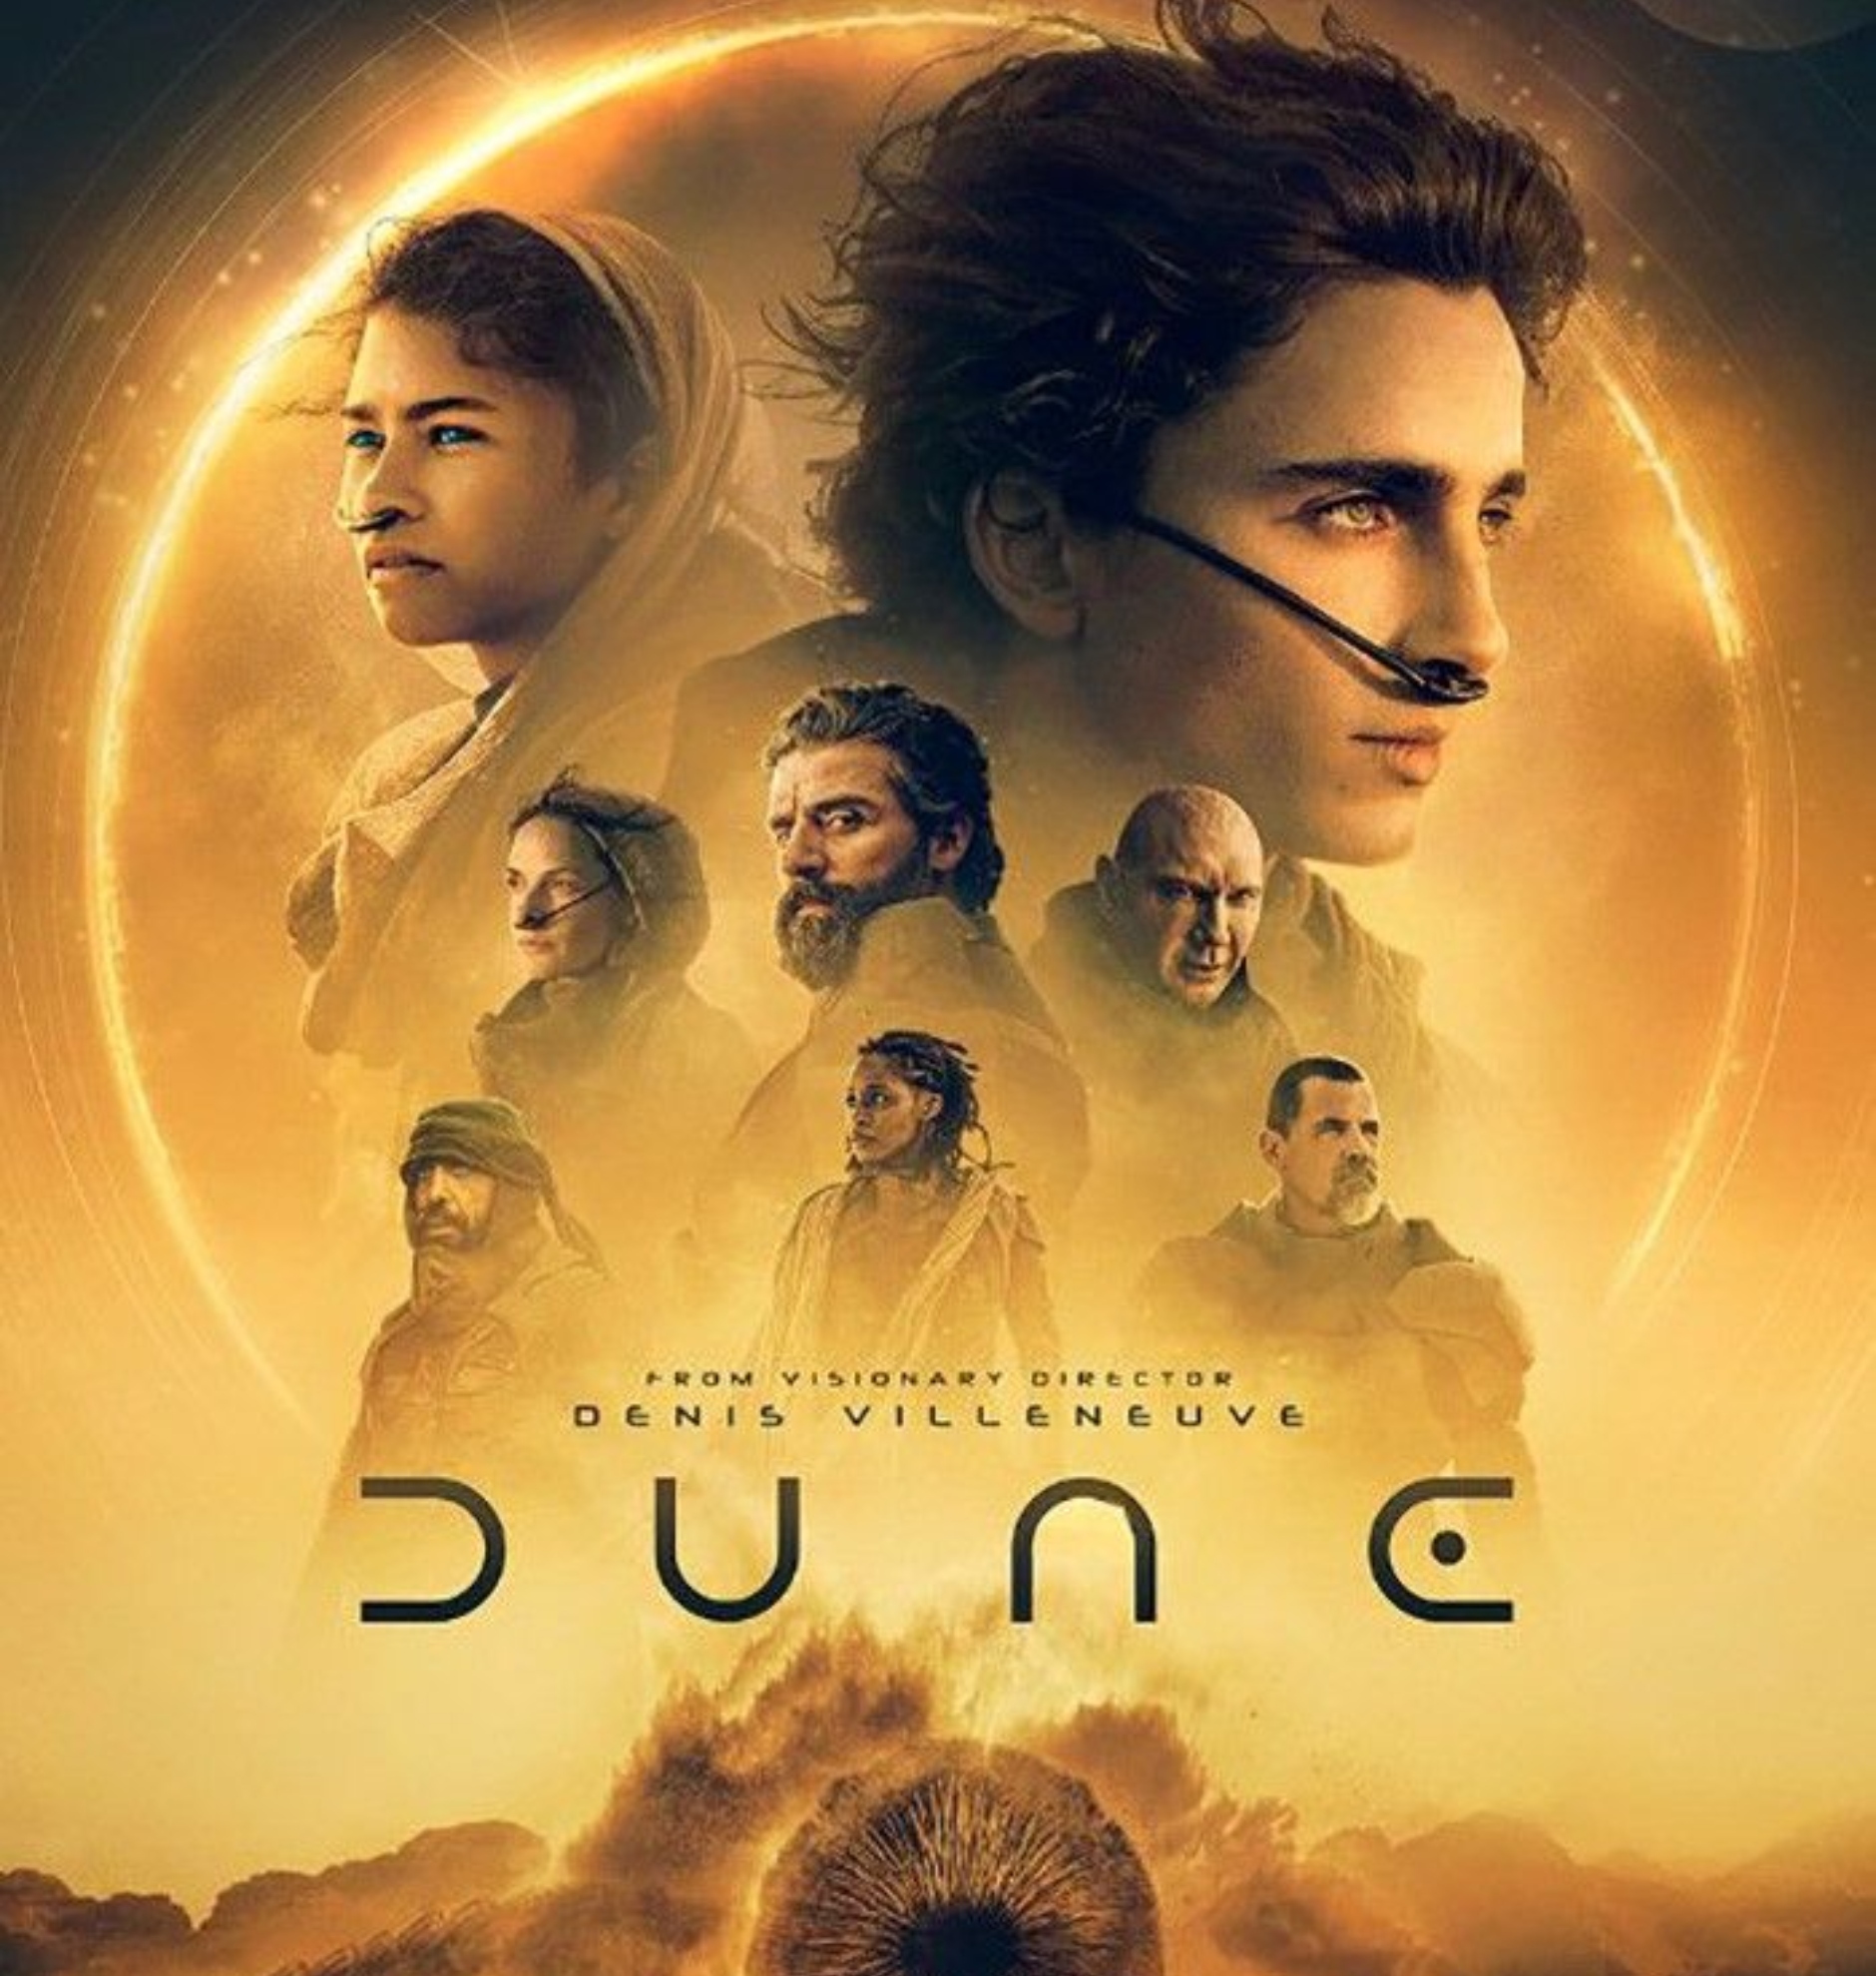 La ltima locura de un cinfilo con 'Dune': ha visto 200 veces la pelcula desde su estreno